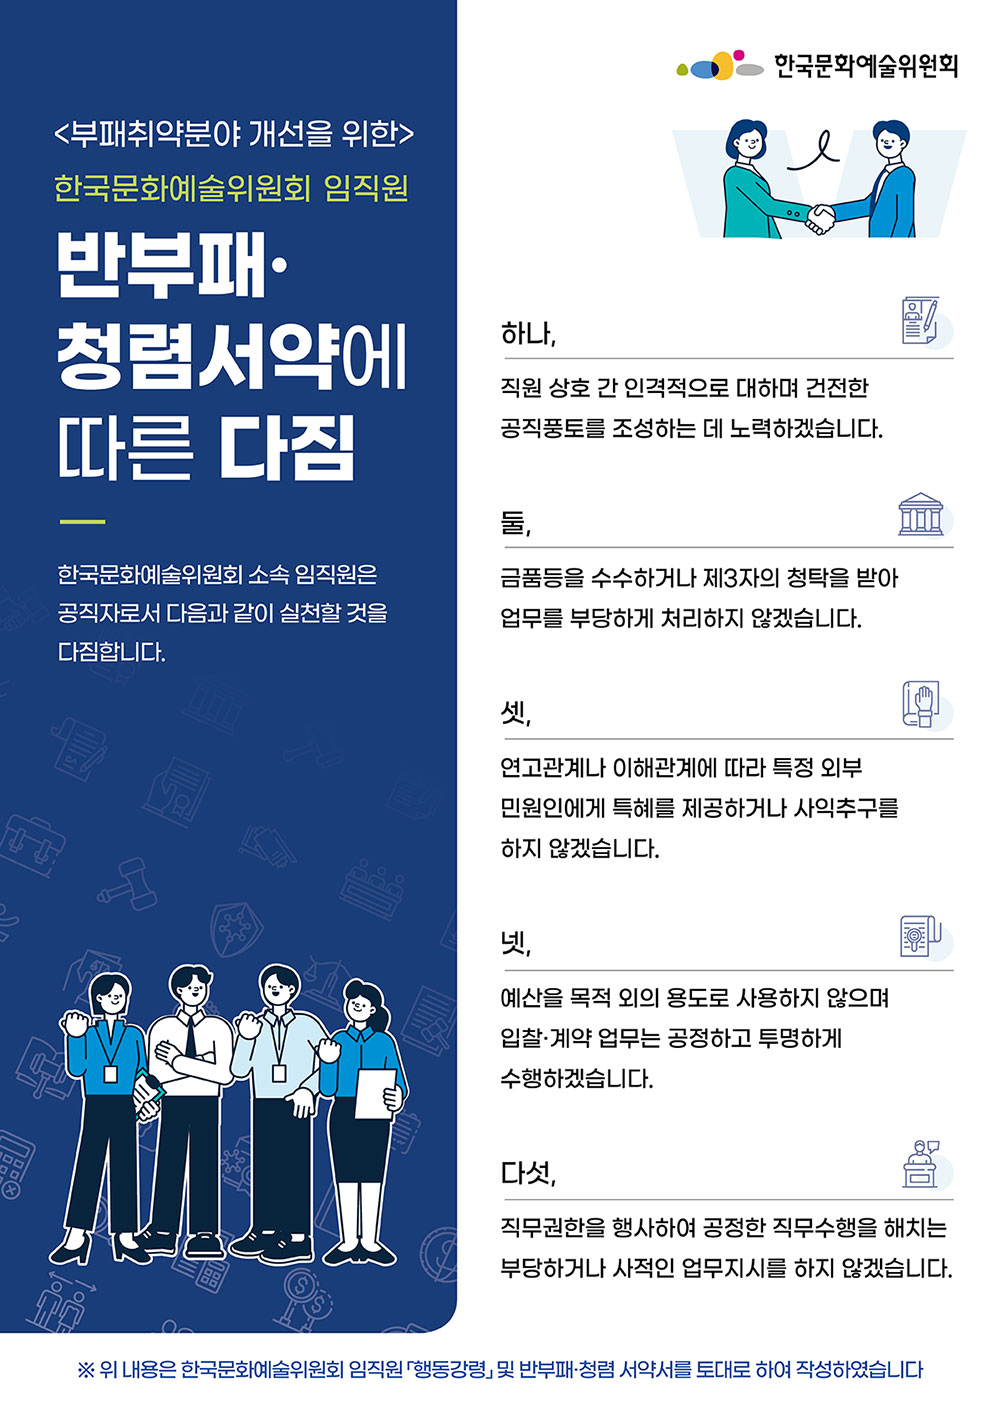 부패취약분야 개선을 위한 한국문화예술위원회 임직원 반부패·청렴서약에 따른 다짐(자세한 내용 아래 참조)